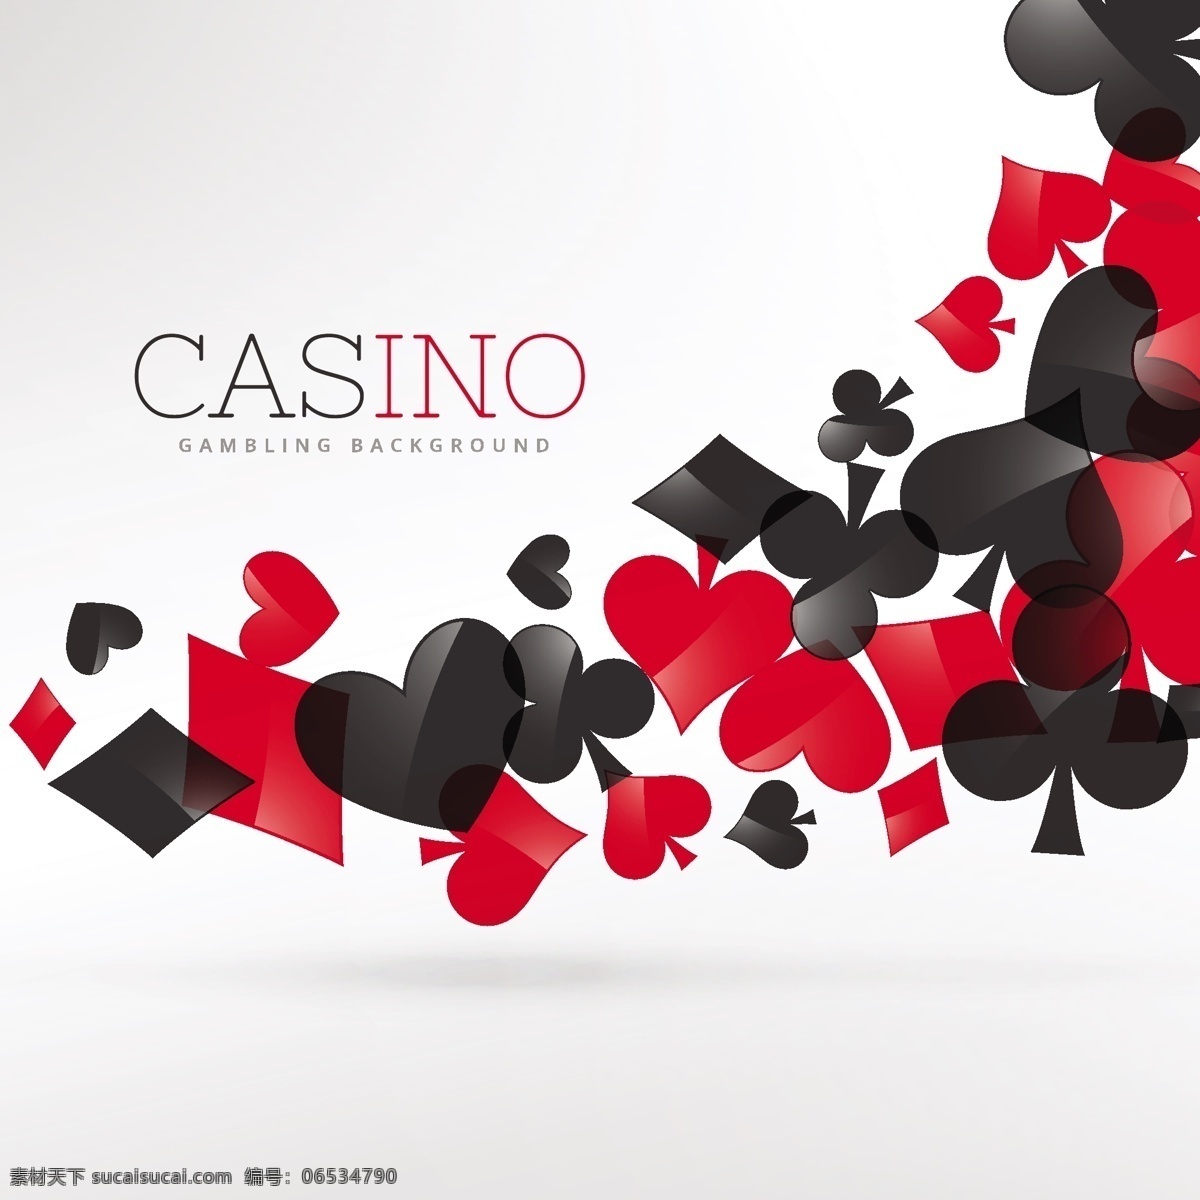 赌场的符号 背景 心脏 卡片 红色 钻石 黑色 游戏 形状 成功 赢家 白色 赌场 扑克 胜利 竞争 俱乐部 元素 风险